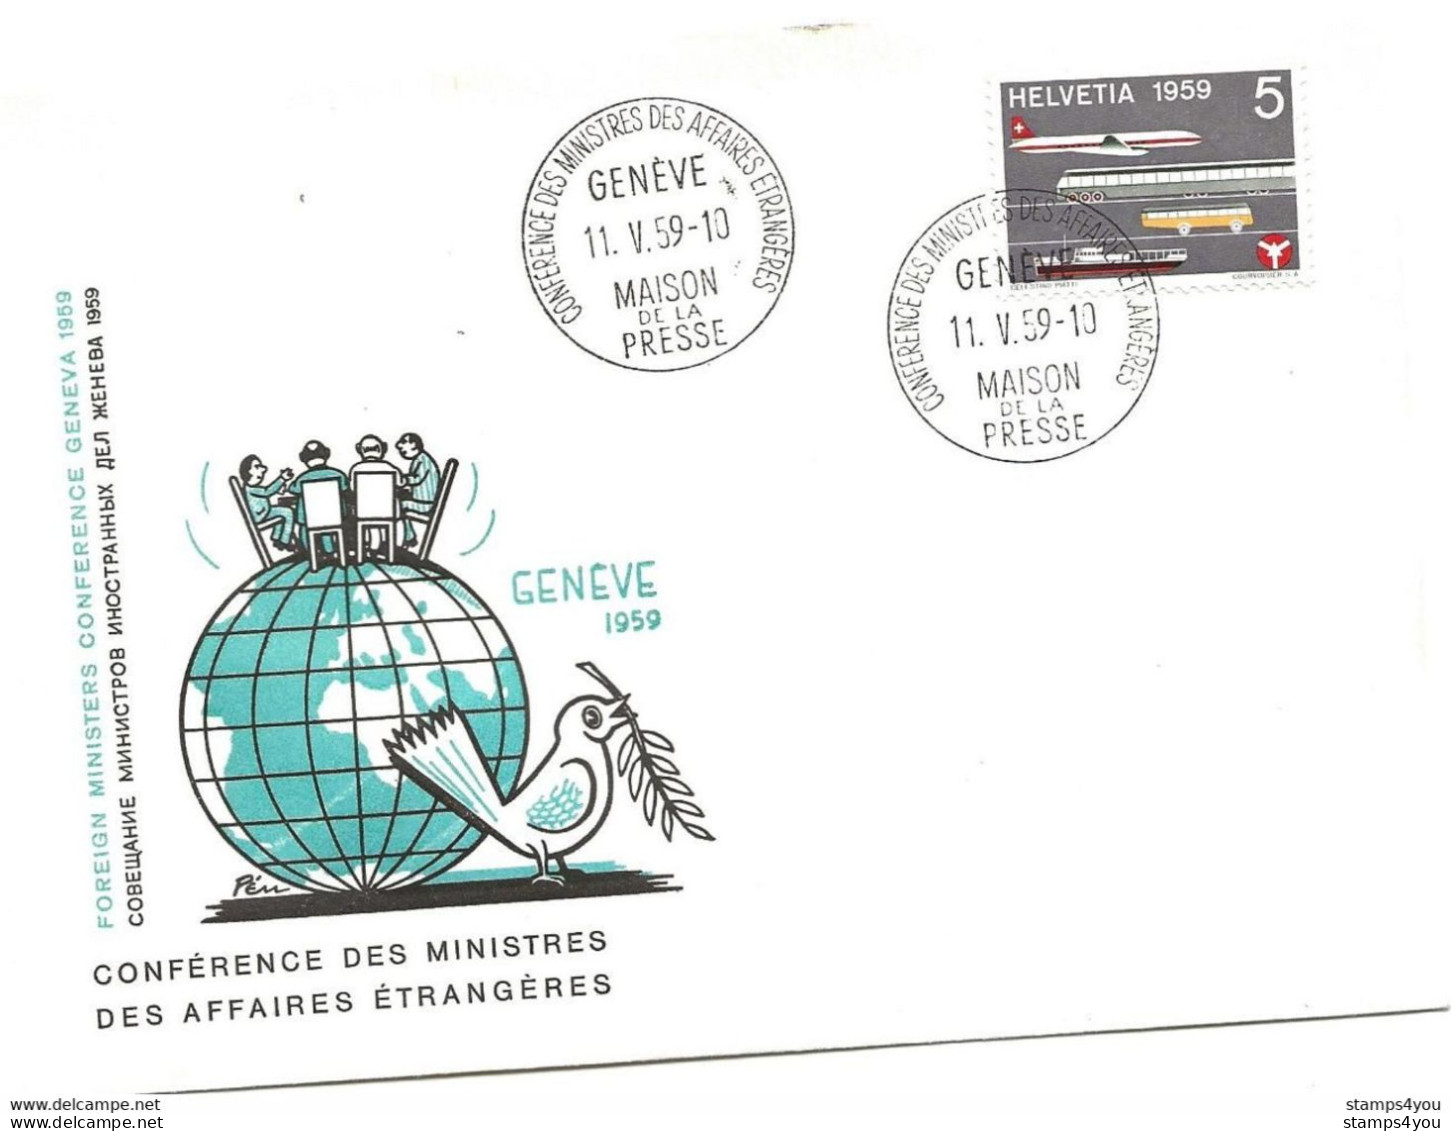 125 - 35 - Enveloppe "PEN" Avec Oblit Spéciale Genève Maison Presse - Conférence Ministres Affaires étrangères 1959 - Postmark Collection